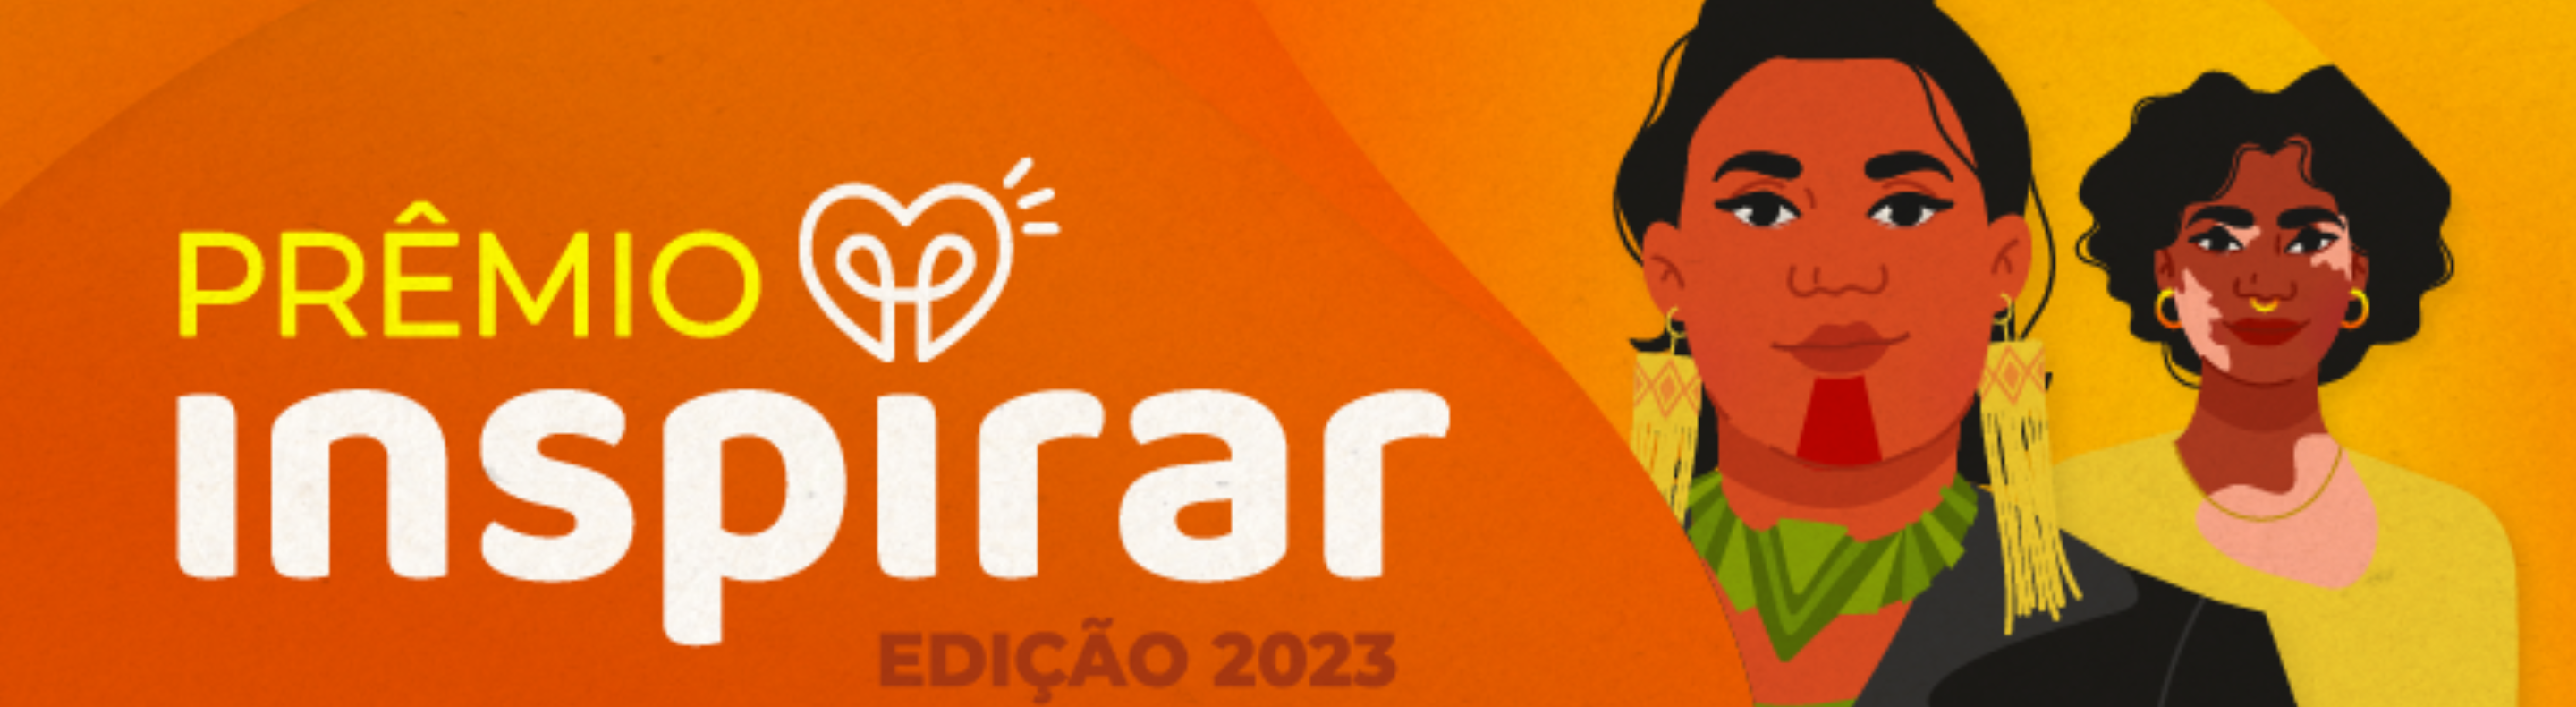 Imagem mostra banner com a inscrição Prêmio Inspirar Edição 2023 